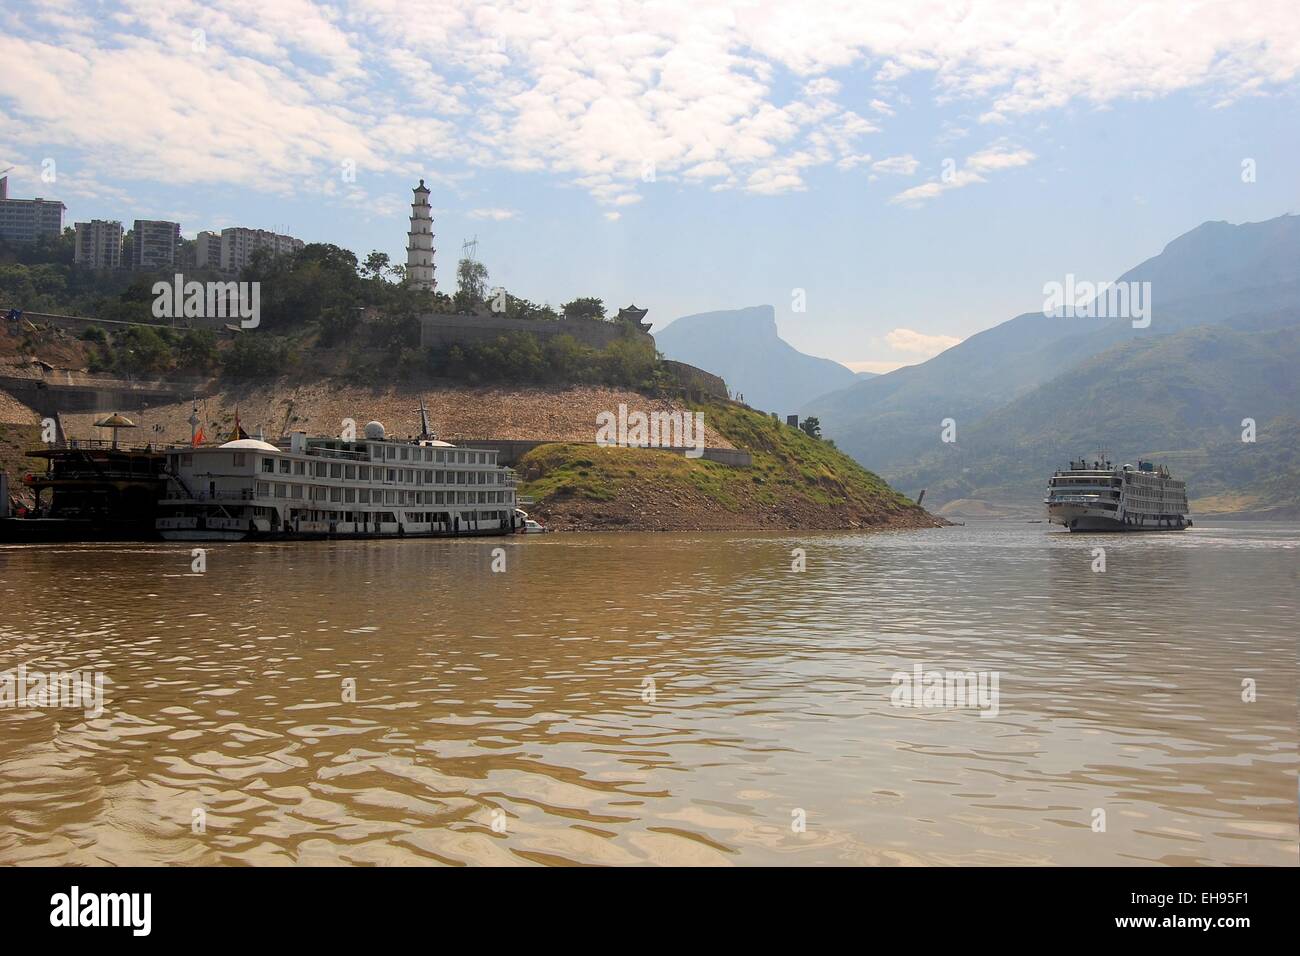 Boat on the Yangtze River, China Stock Photo